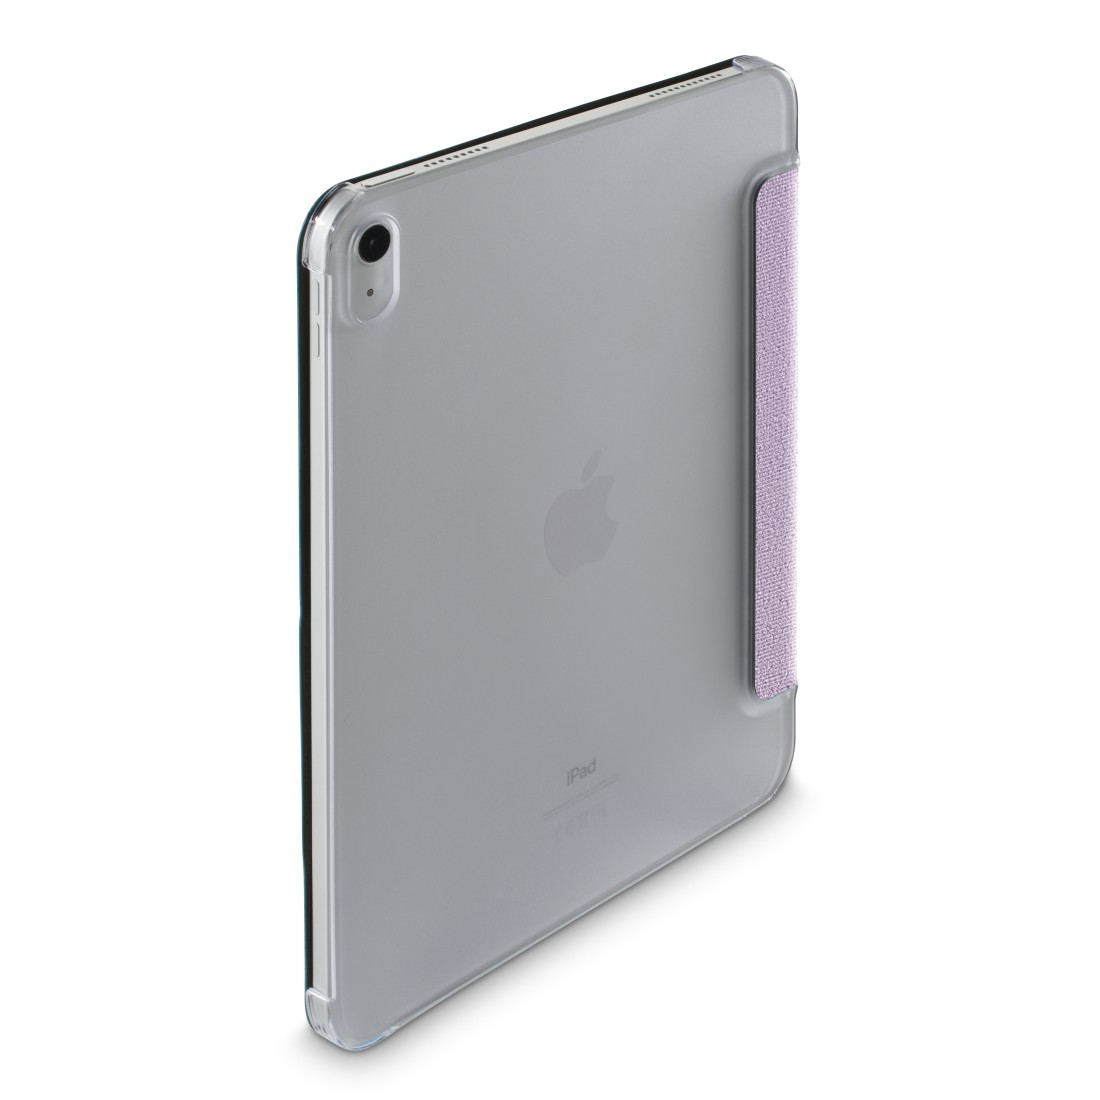 HAMA Velvet, Bookcover, Apple, 2022), iPad (10. Gen. Flieder 10.9